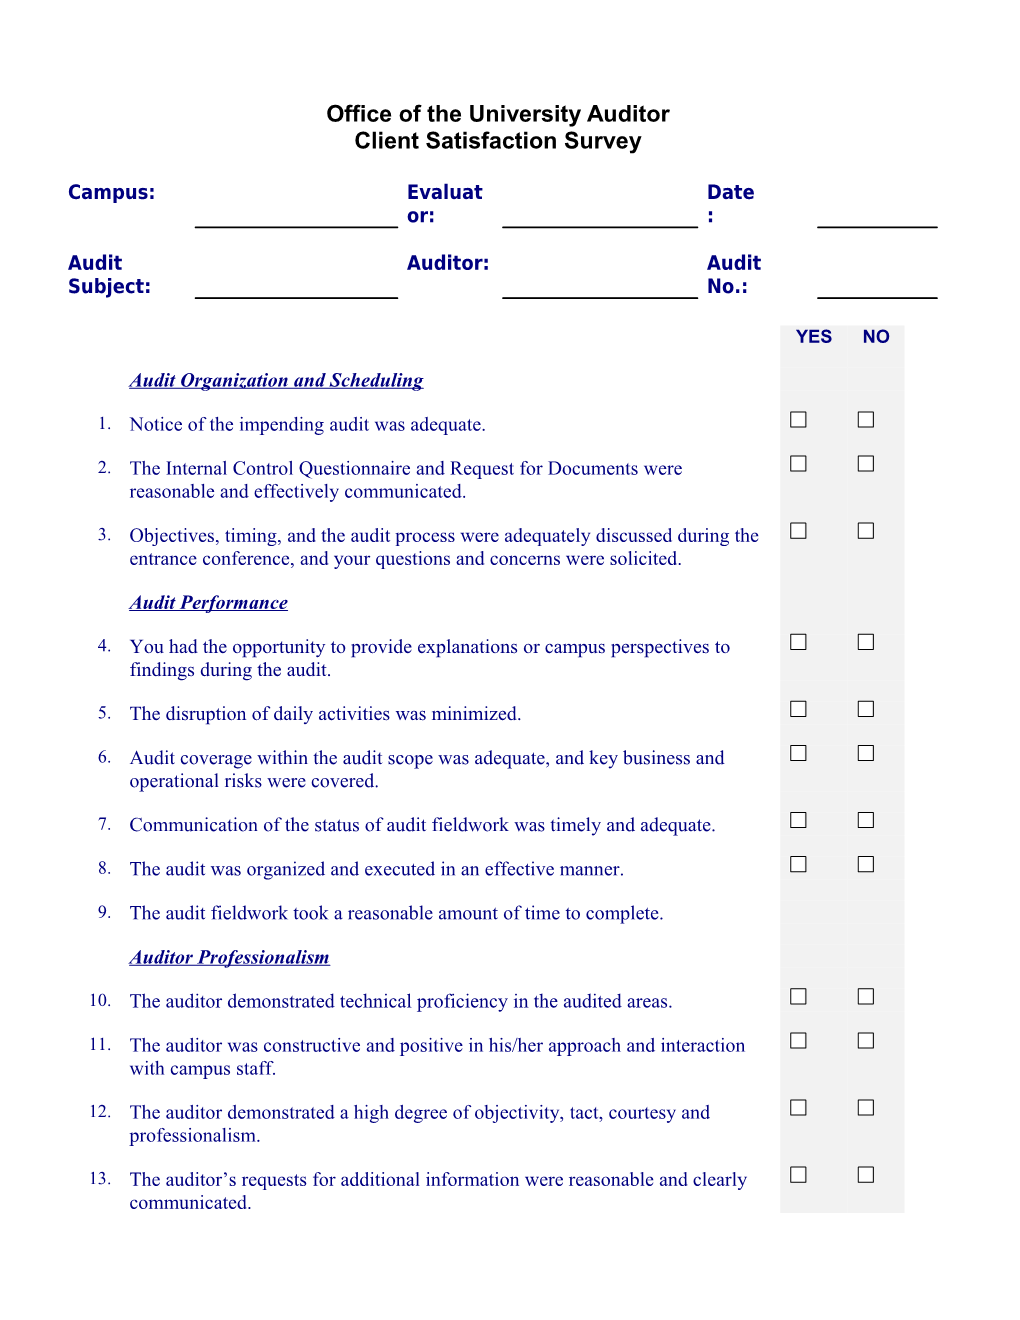 Client Satisfaction Questionnaire